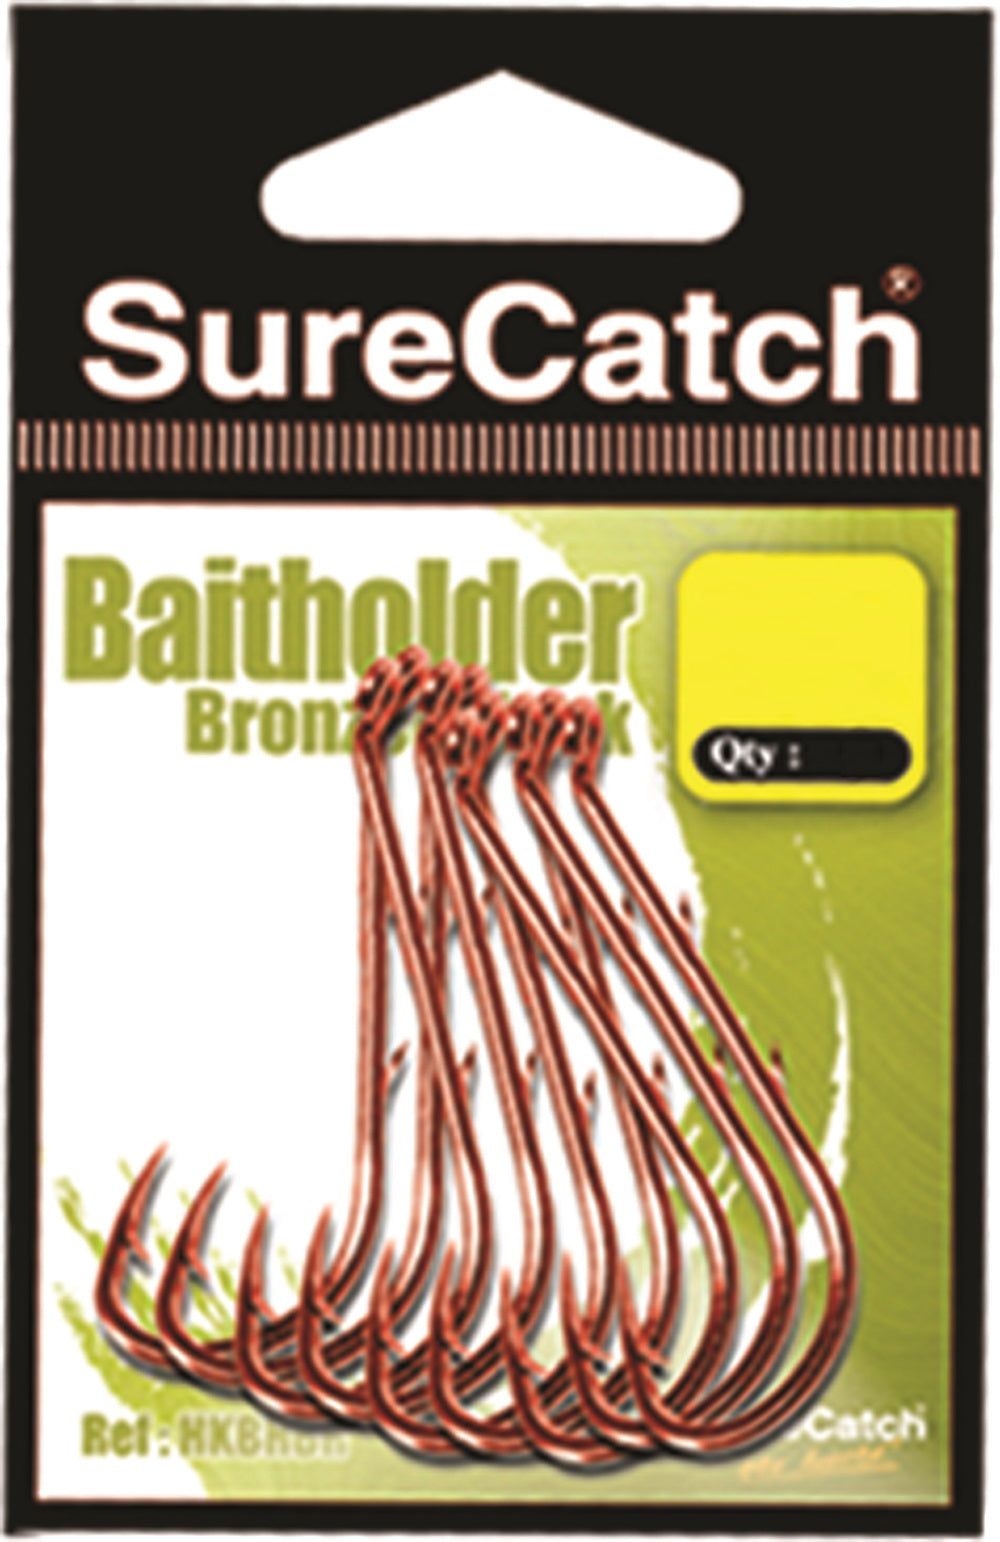 Sure Catch Bronzed Baitholder Hook